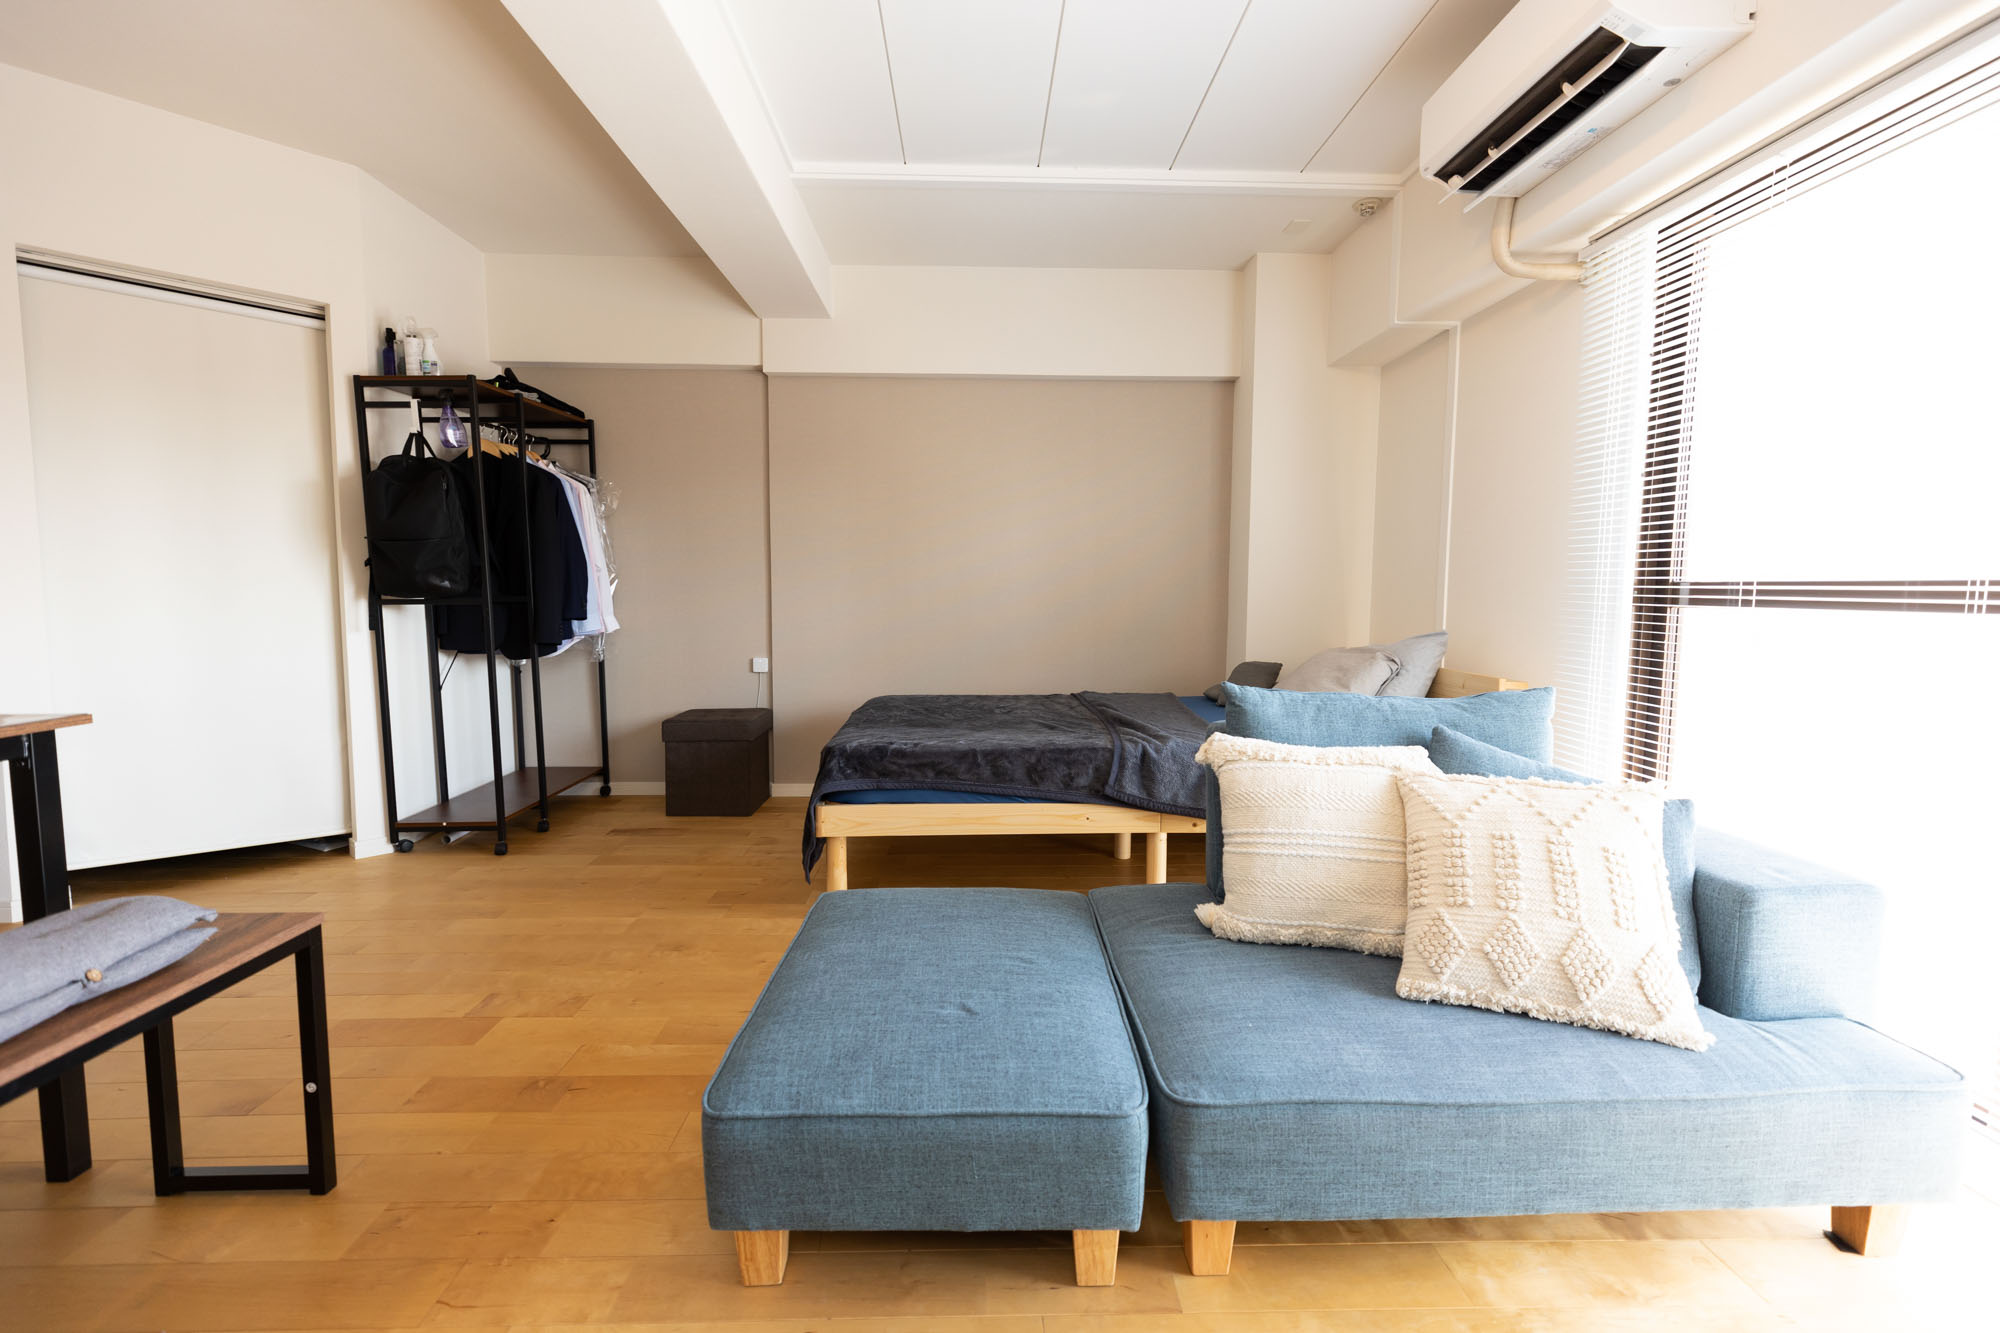 airbnbのサービスアパートメントのような雰囲気を意識されているというNaoyaさん。広いワンルームを家具の配置によってゆるくゾーン分けして使われています。